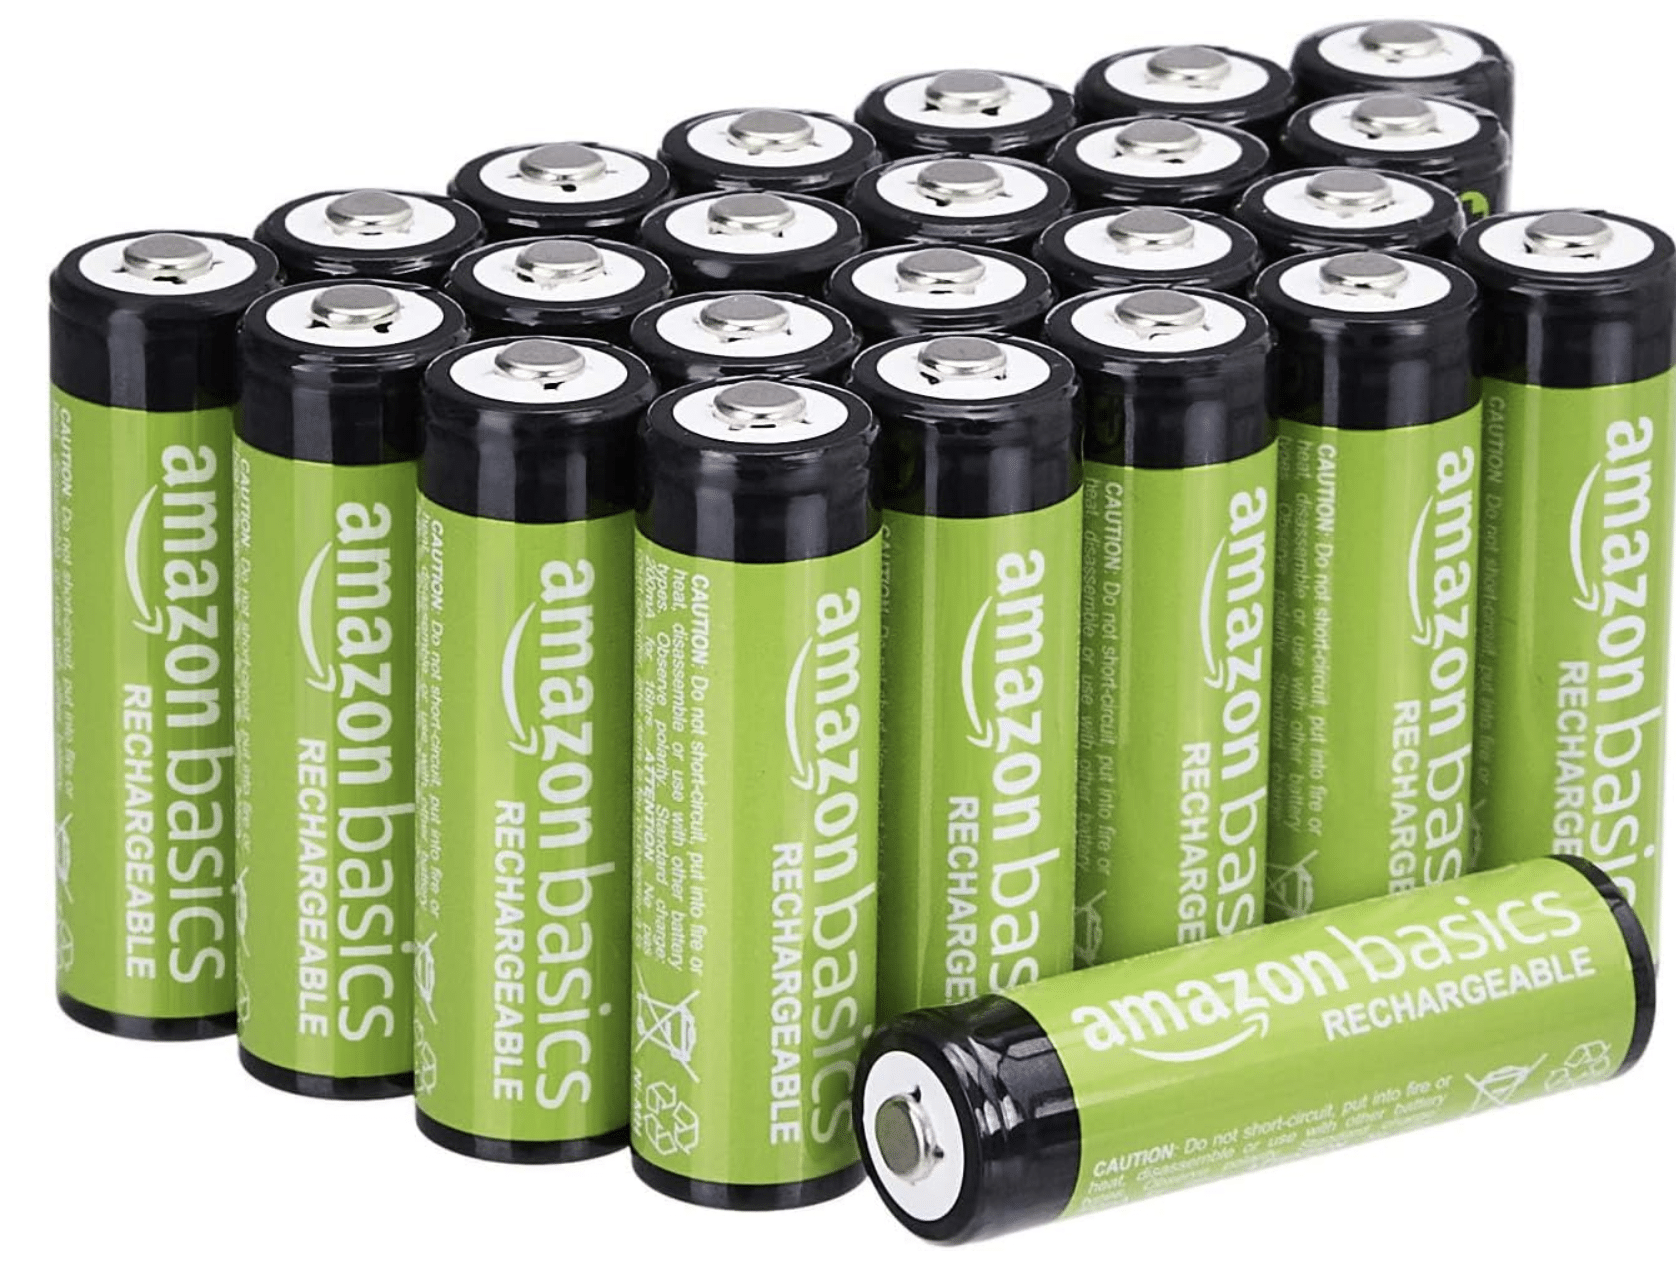 Amazon Basics AA-Batterien, wiederaufladbar, 2000 mAh, vorgeladen, 24 Stück, für 20,41€! 🚀